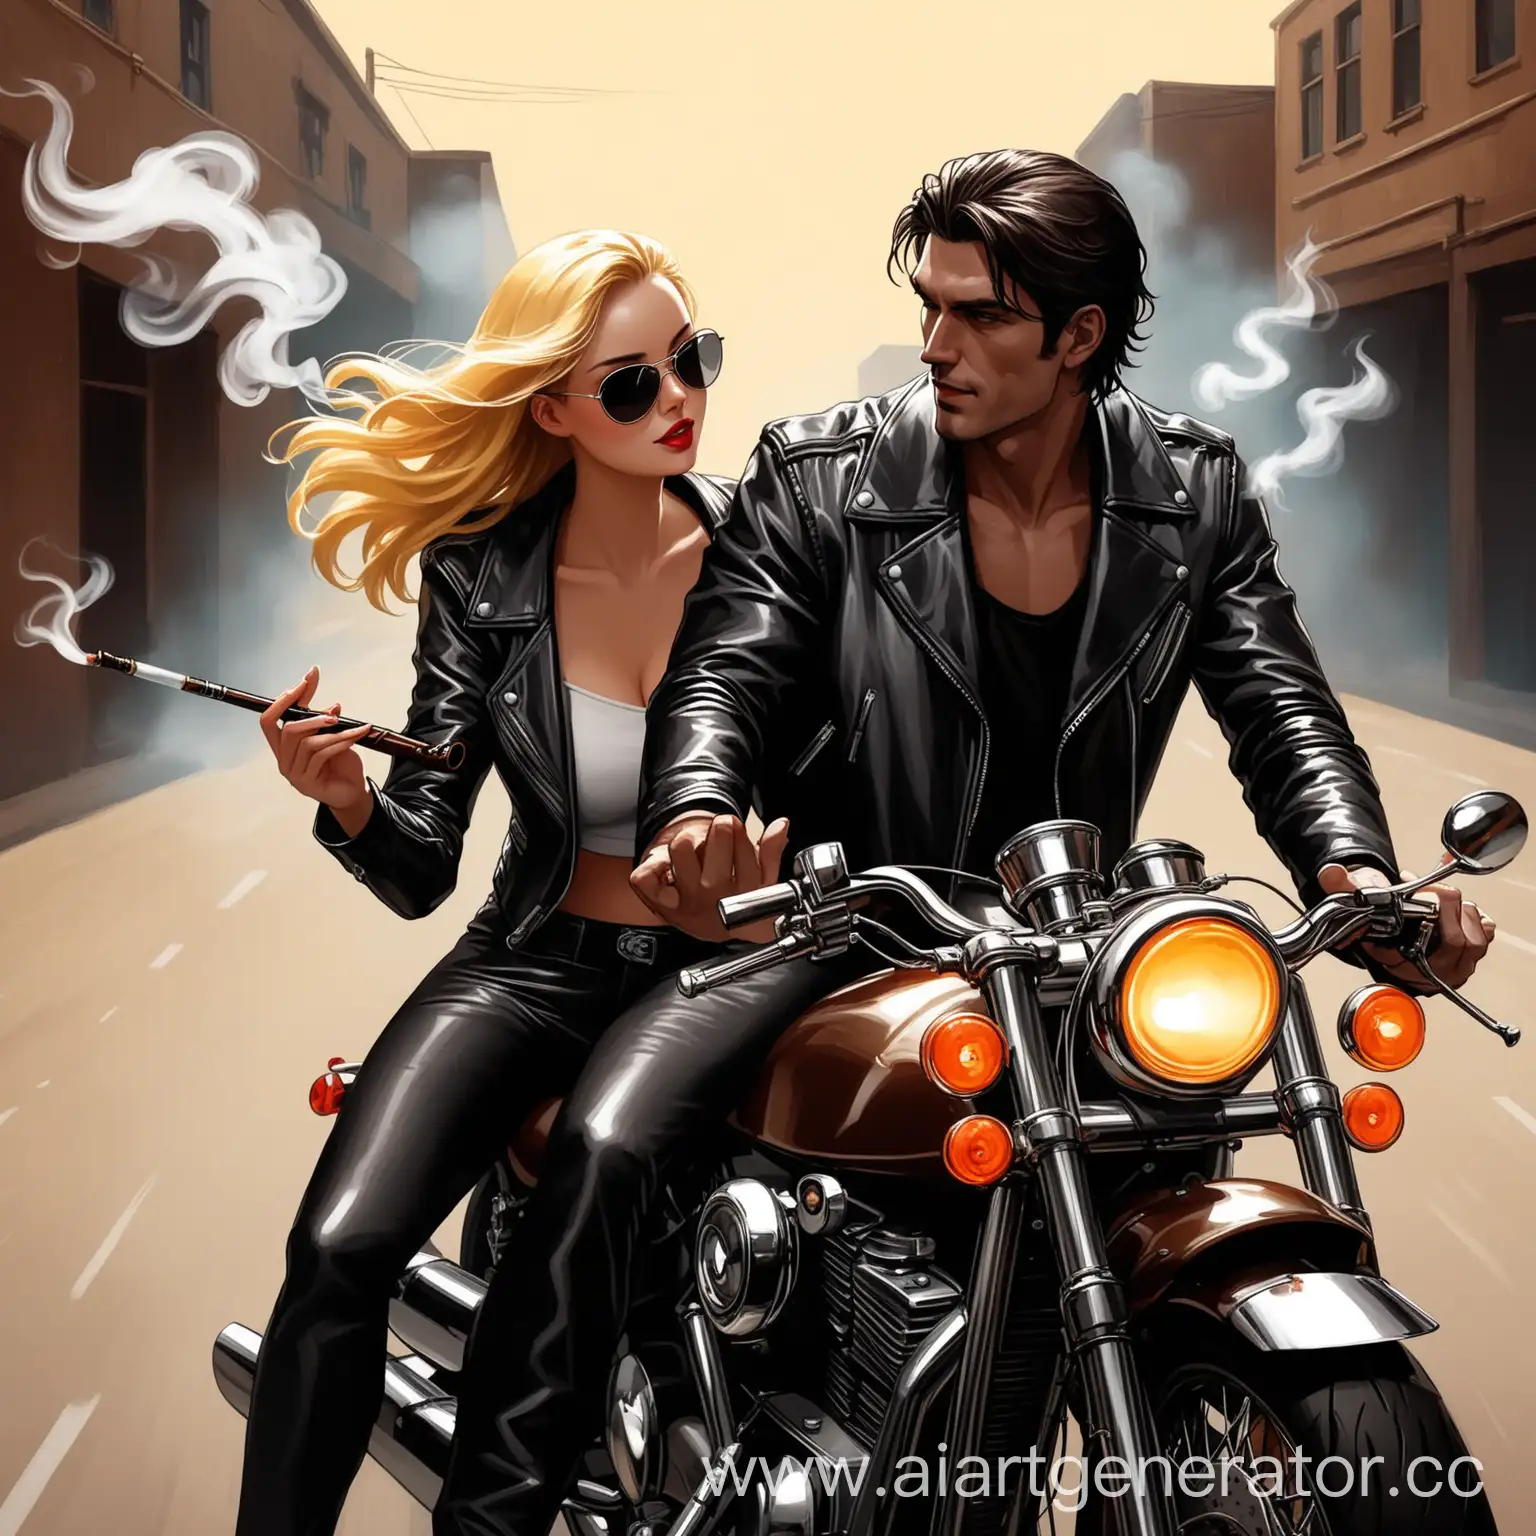 Парень с темными волосами в кожаной куртке,девушка блондинка в кожаном костюме едут на мотоцикле,девушка держит в руках дымовую шашку